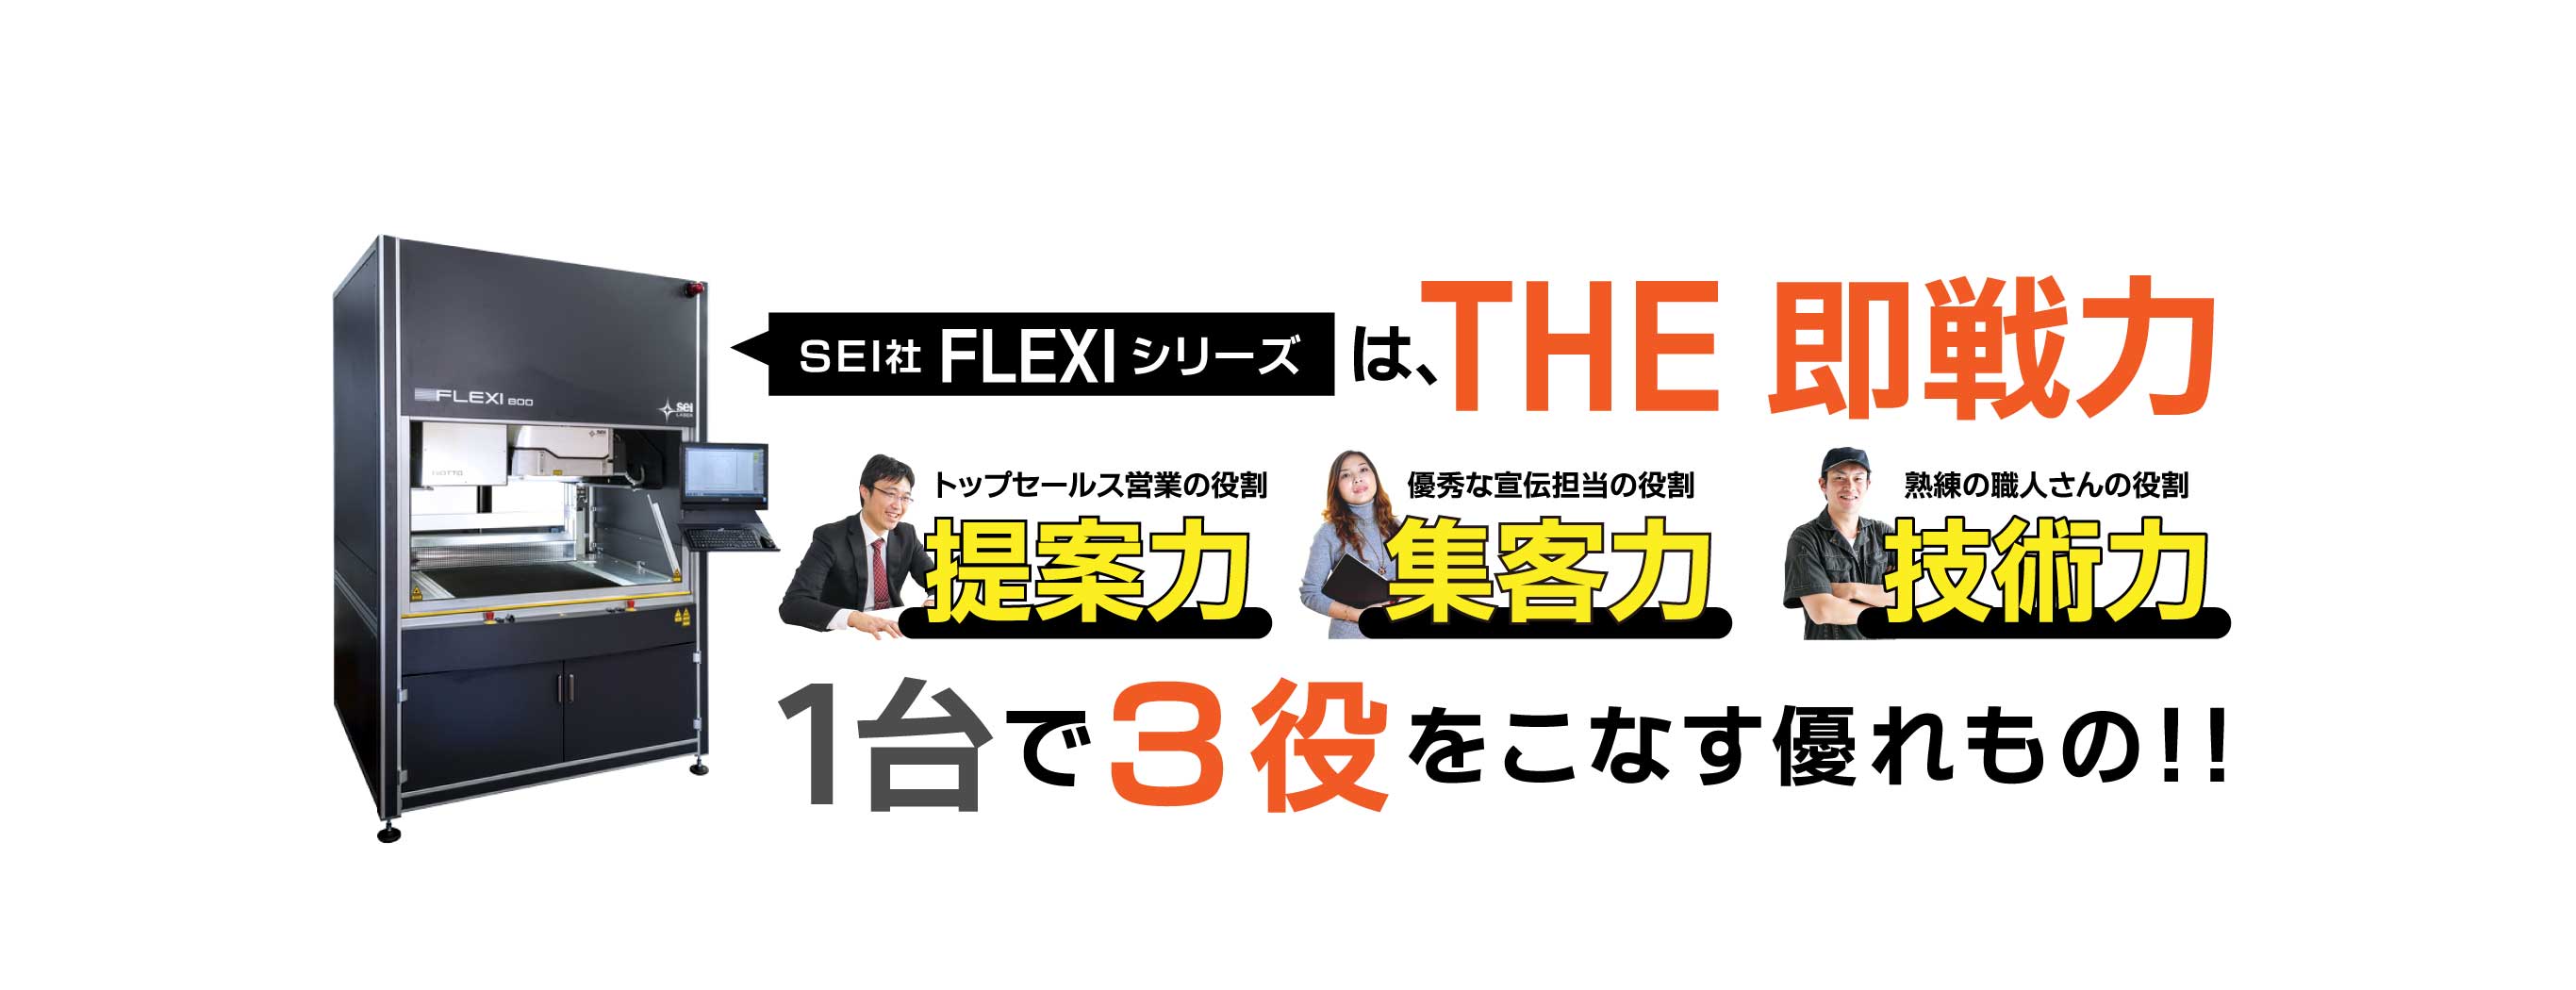 『提案力』『集客力』『技術力』の1台で3役をはたすレーザー加工機SEIシリーズ FLEXI（フレキシ）をご提案。FLEXIで紙をレーザー加工したサンプルの無料お取り寄せキャンペーン実施中！